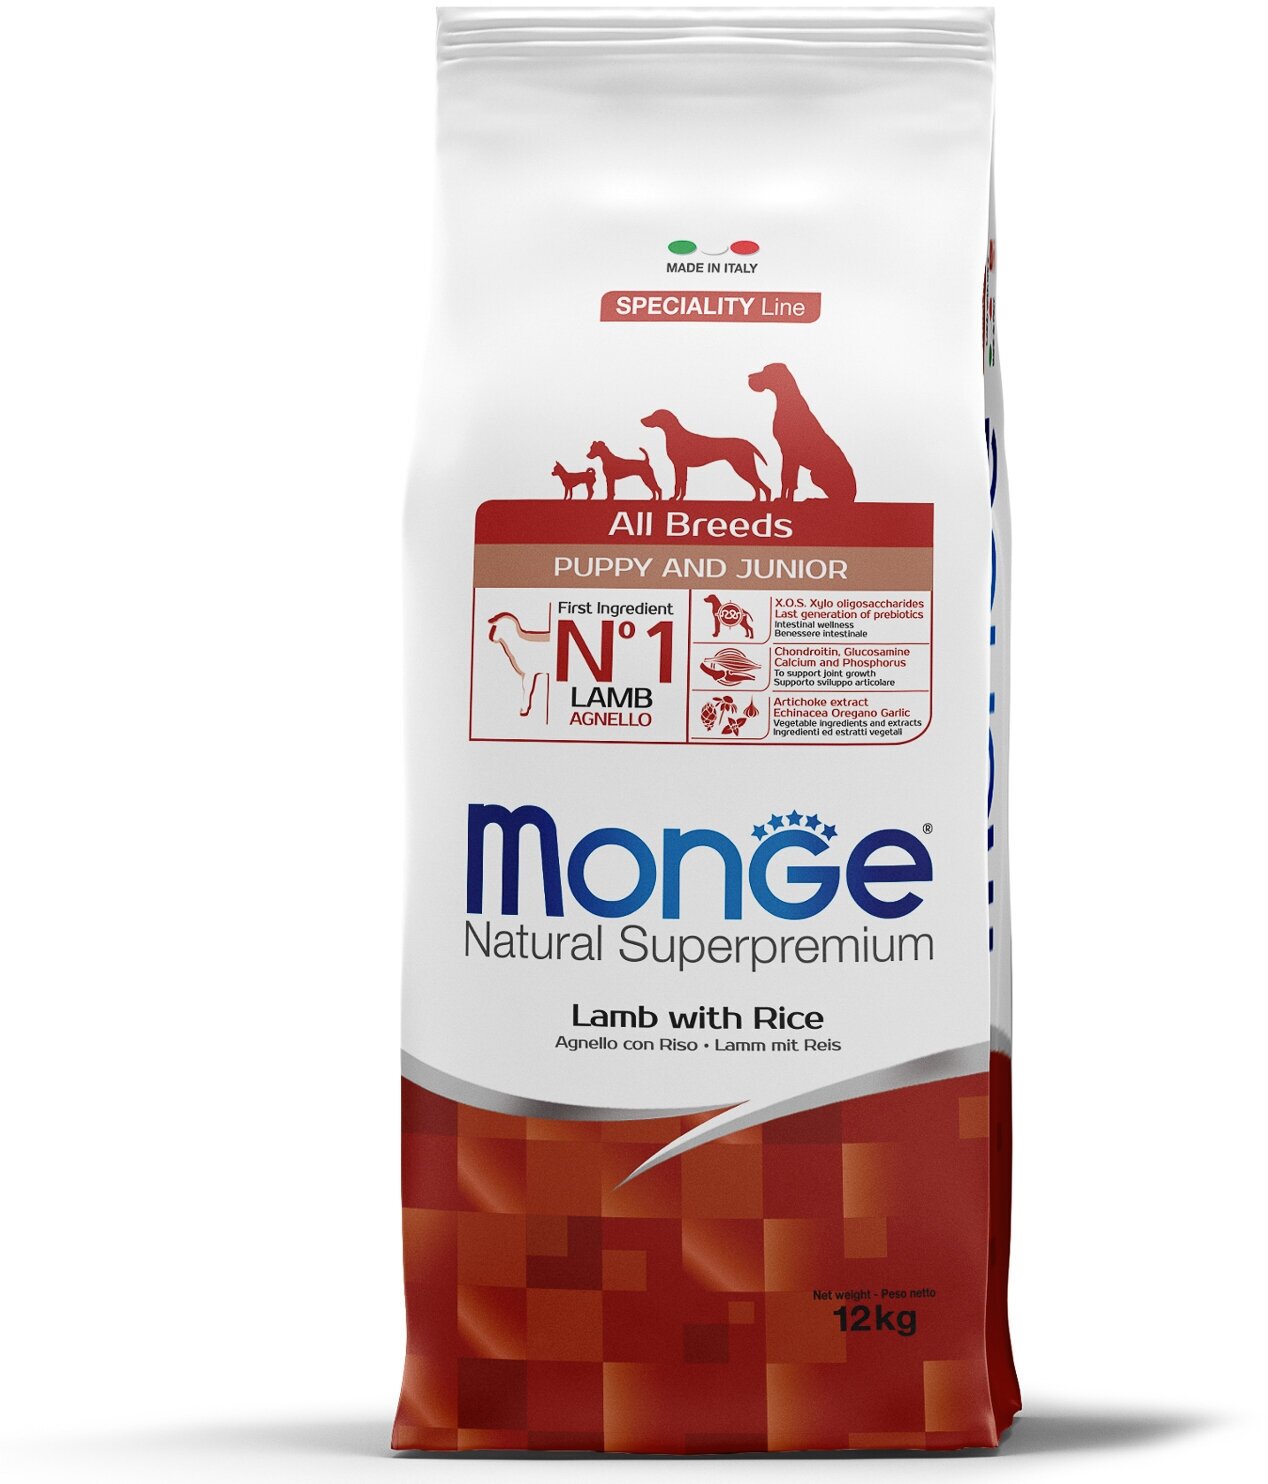 Monge Dog Speciality Puppy & Junior для щенков всех пород Ягненок и рис, 12 кг.